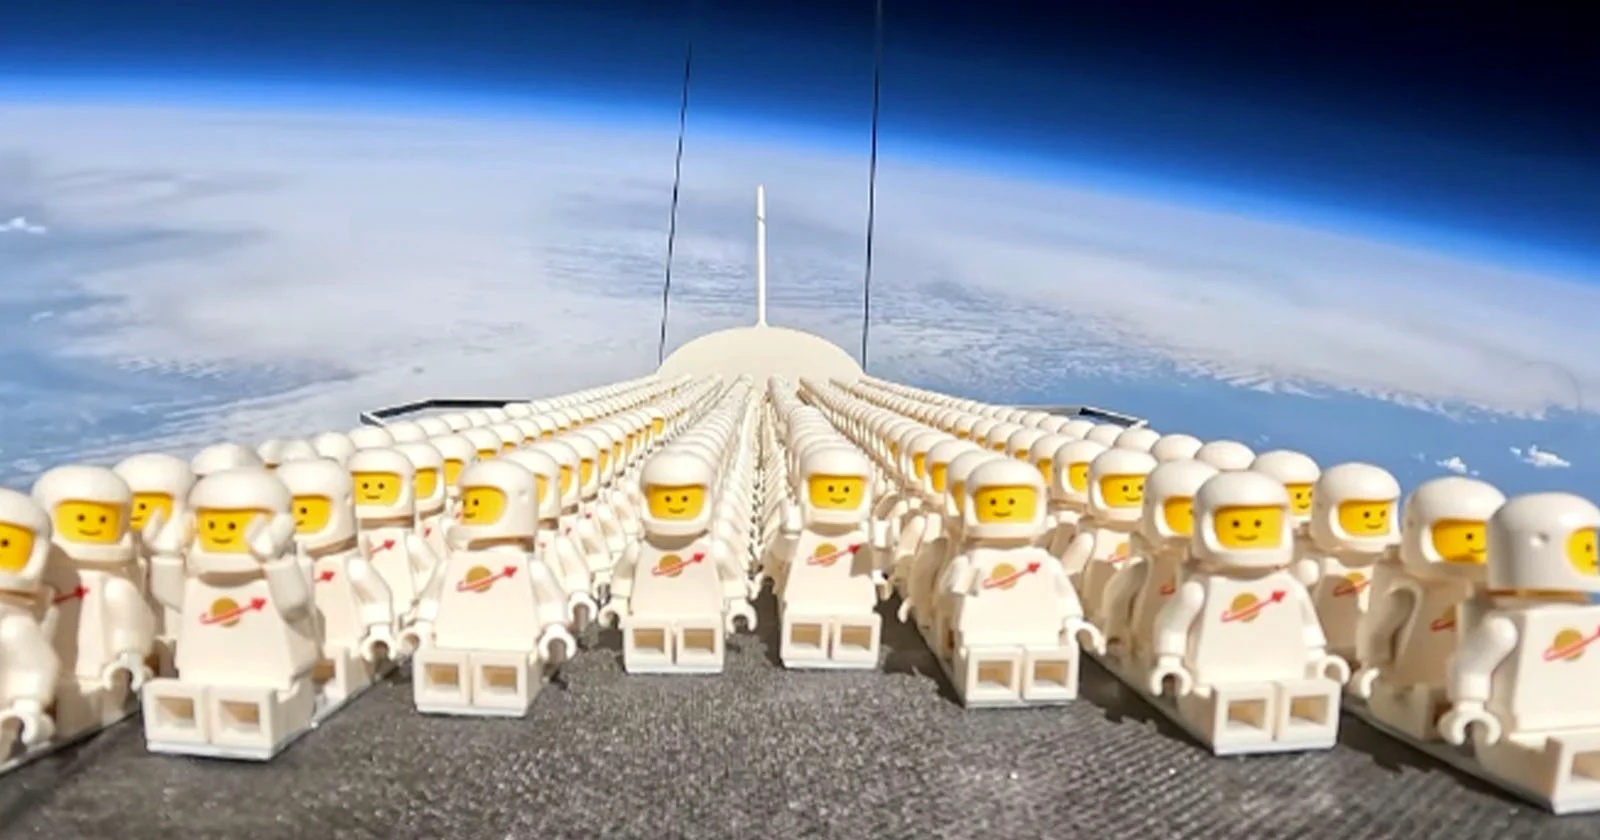 Proyecto envía 1.000 «Legonautas» al borde del espacio en globo estratosférico